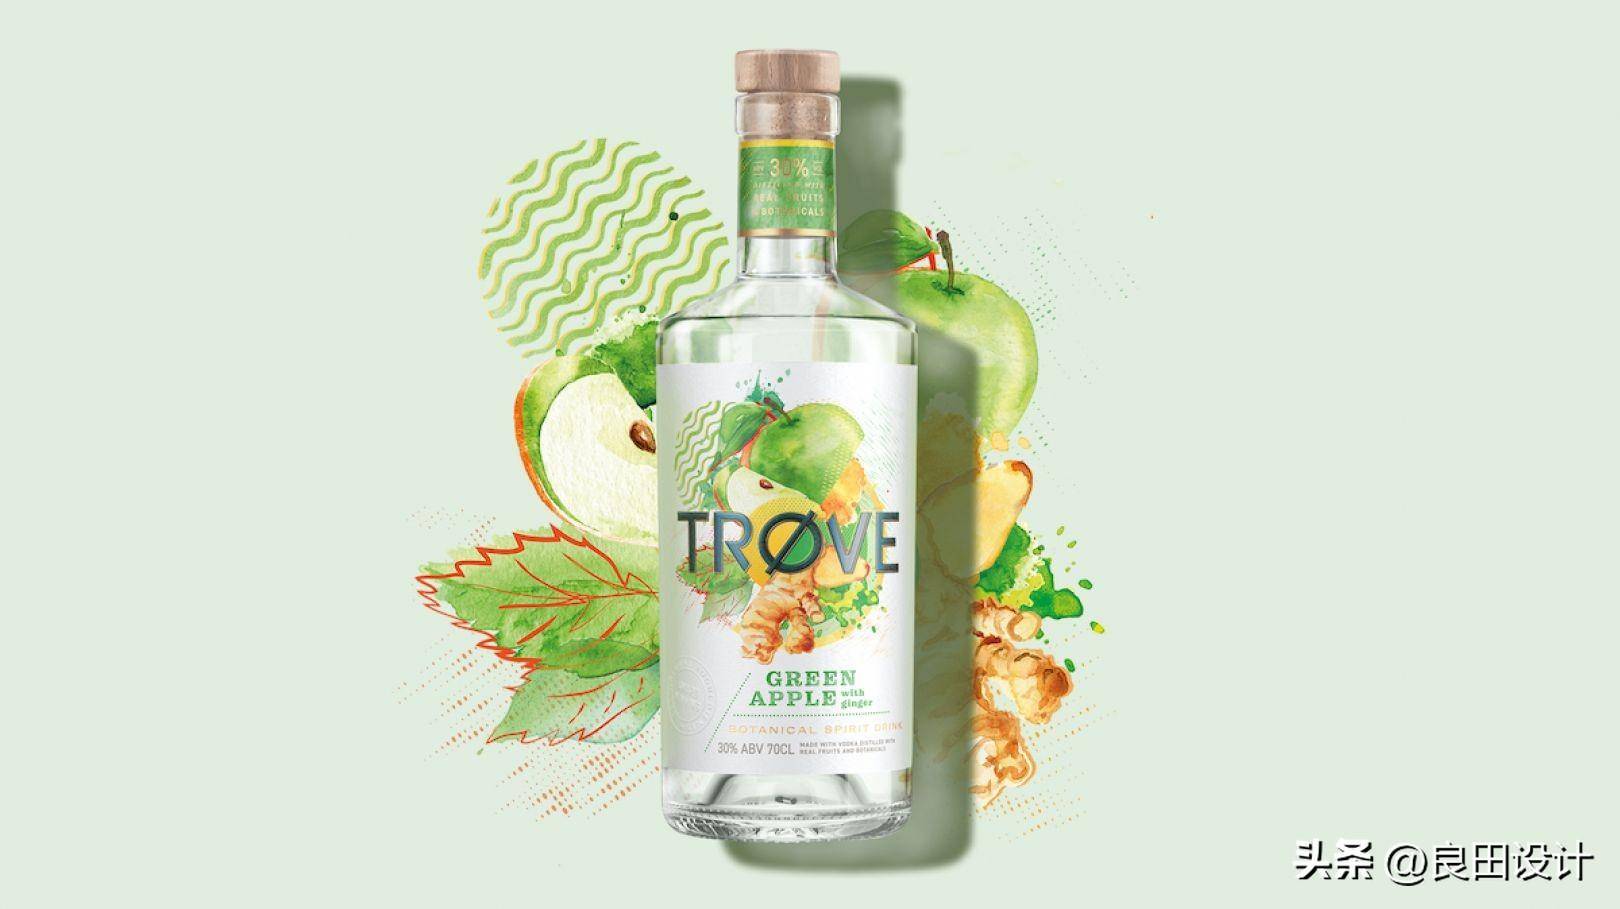 苹果主题插图手绘版:为新的低酒精、低热量烈酒品牌 TRØVE 创作的酒包装设计-第5张图片-太平洋在线下载